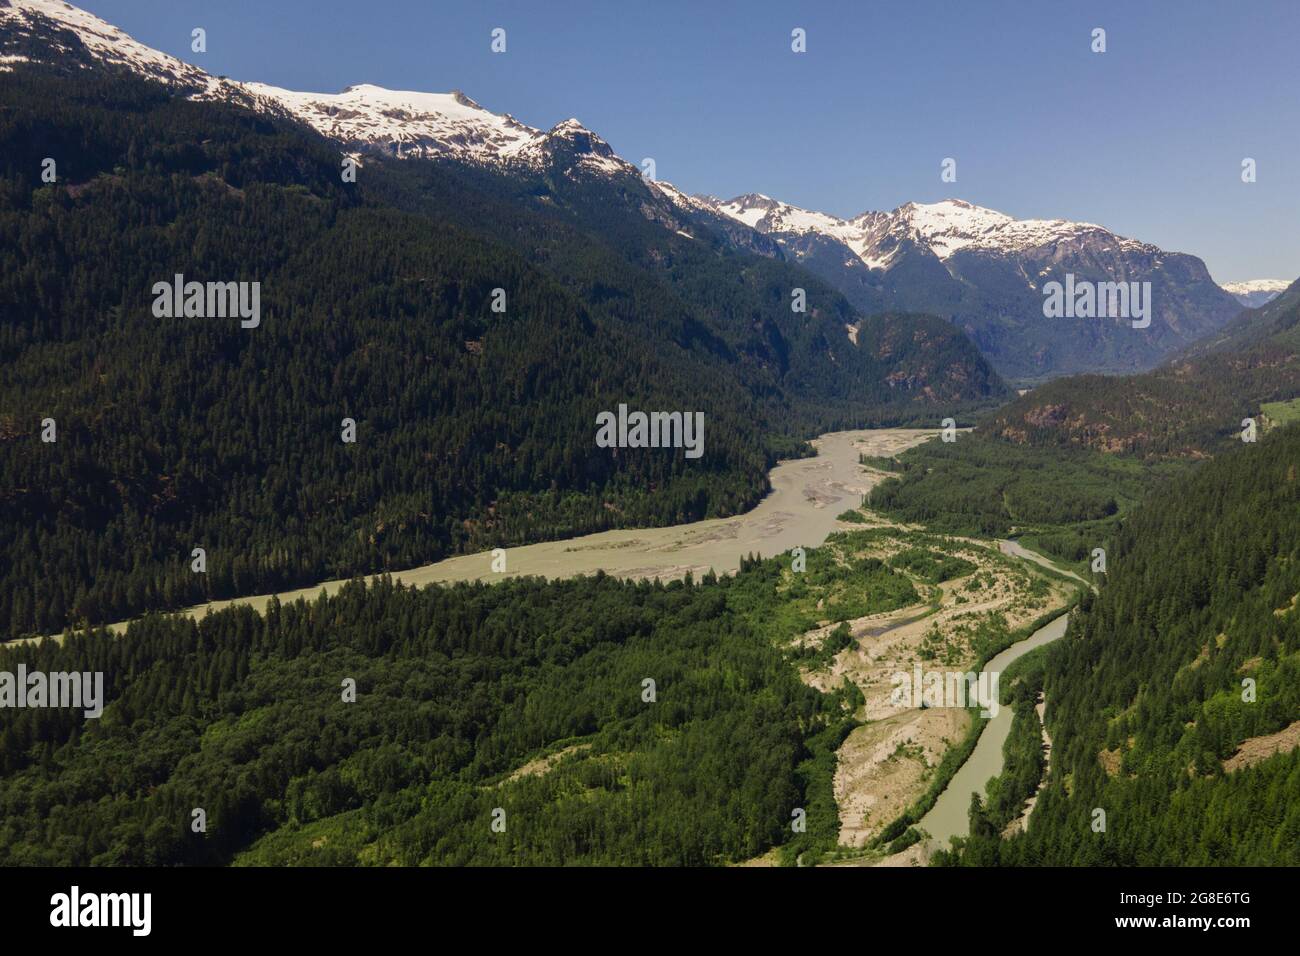 Vue du nord-ouest de la vallée de la rivière Squamish pendant le pic de la fraîcheur. Banque D'Images